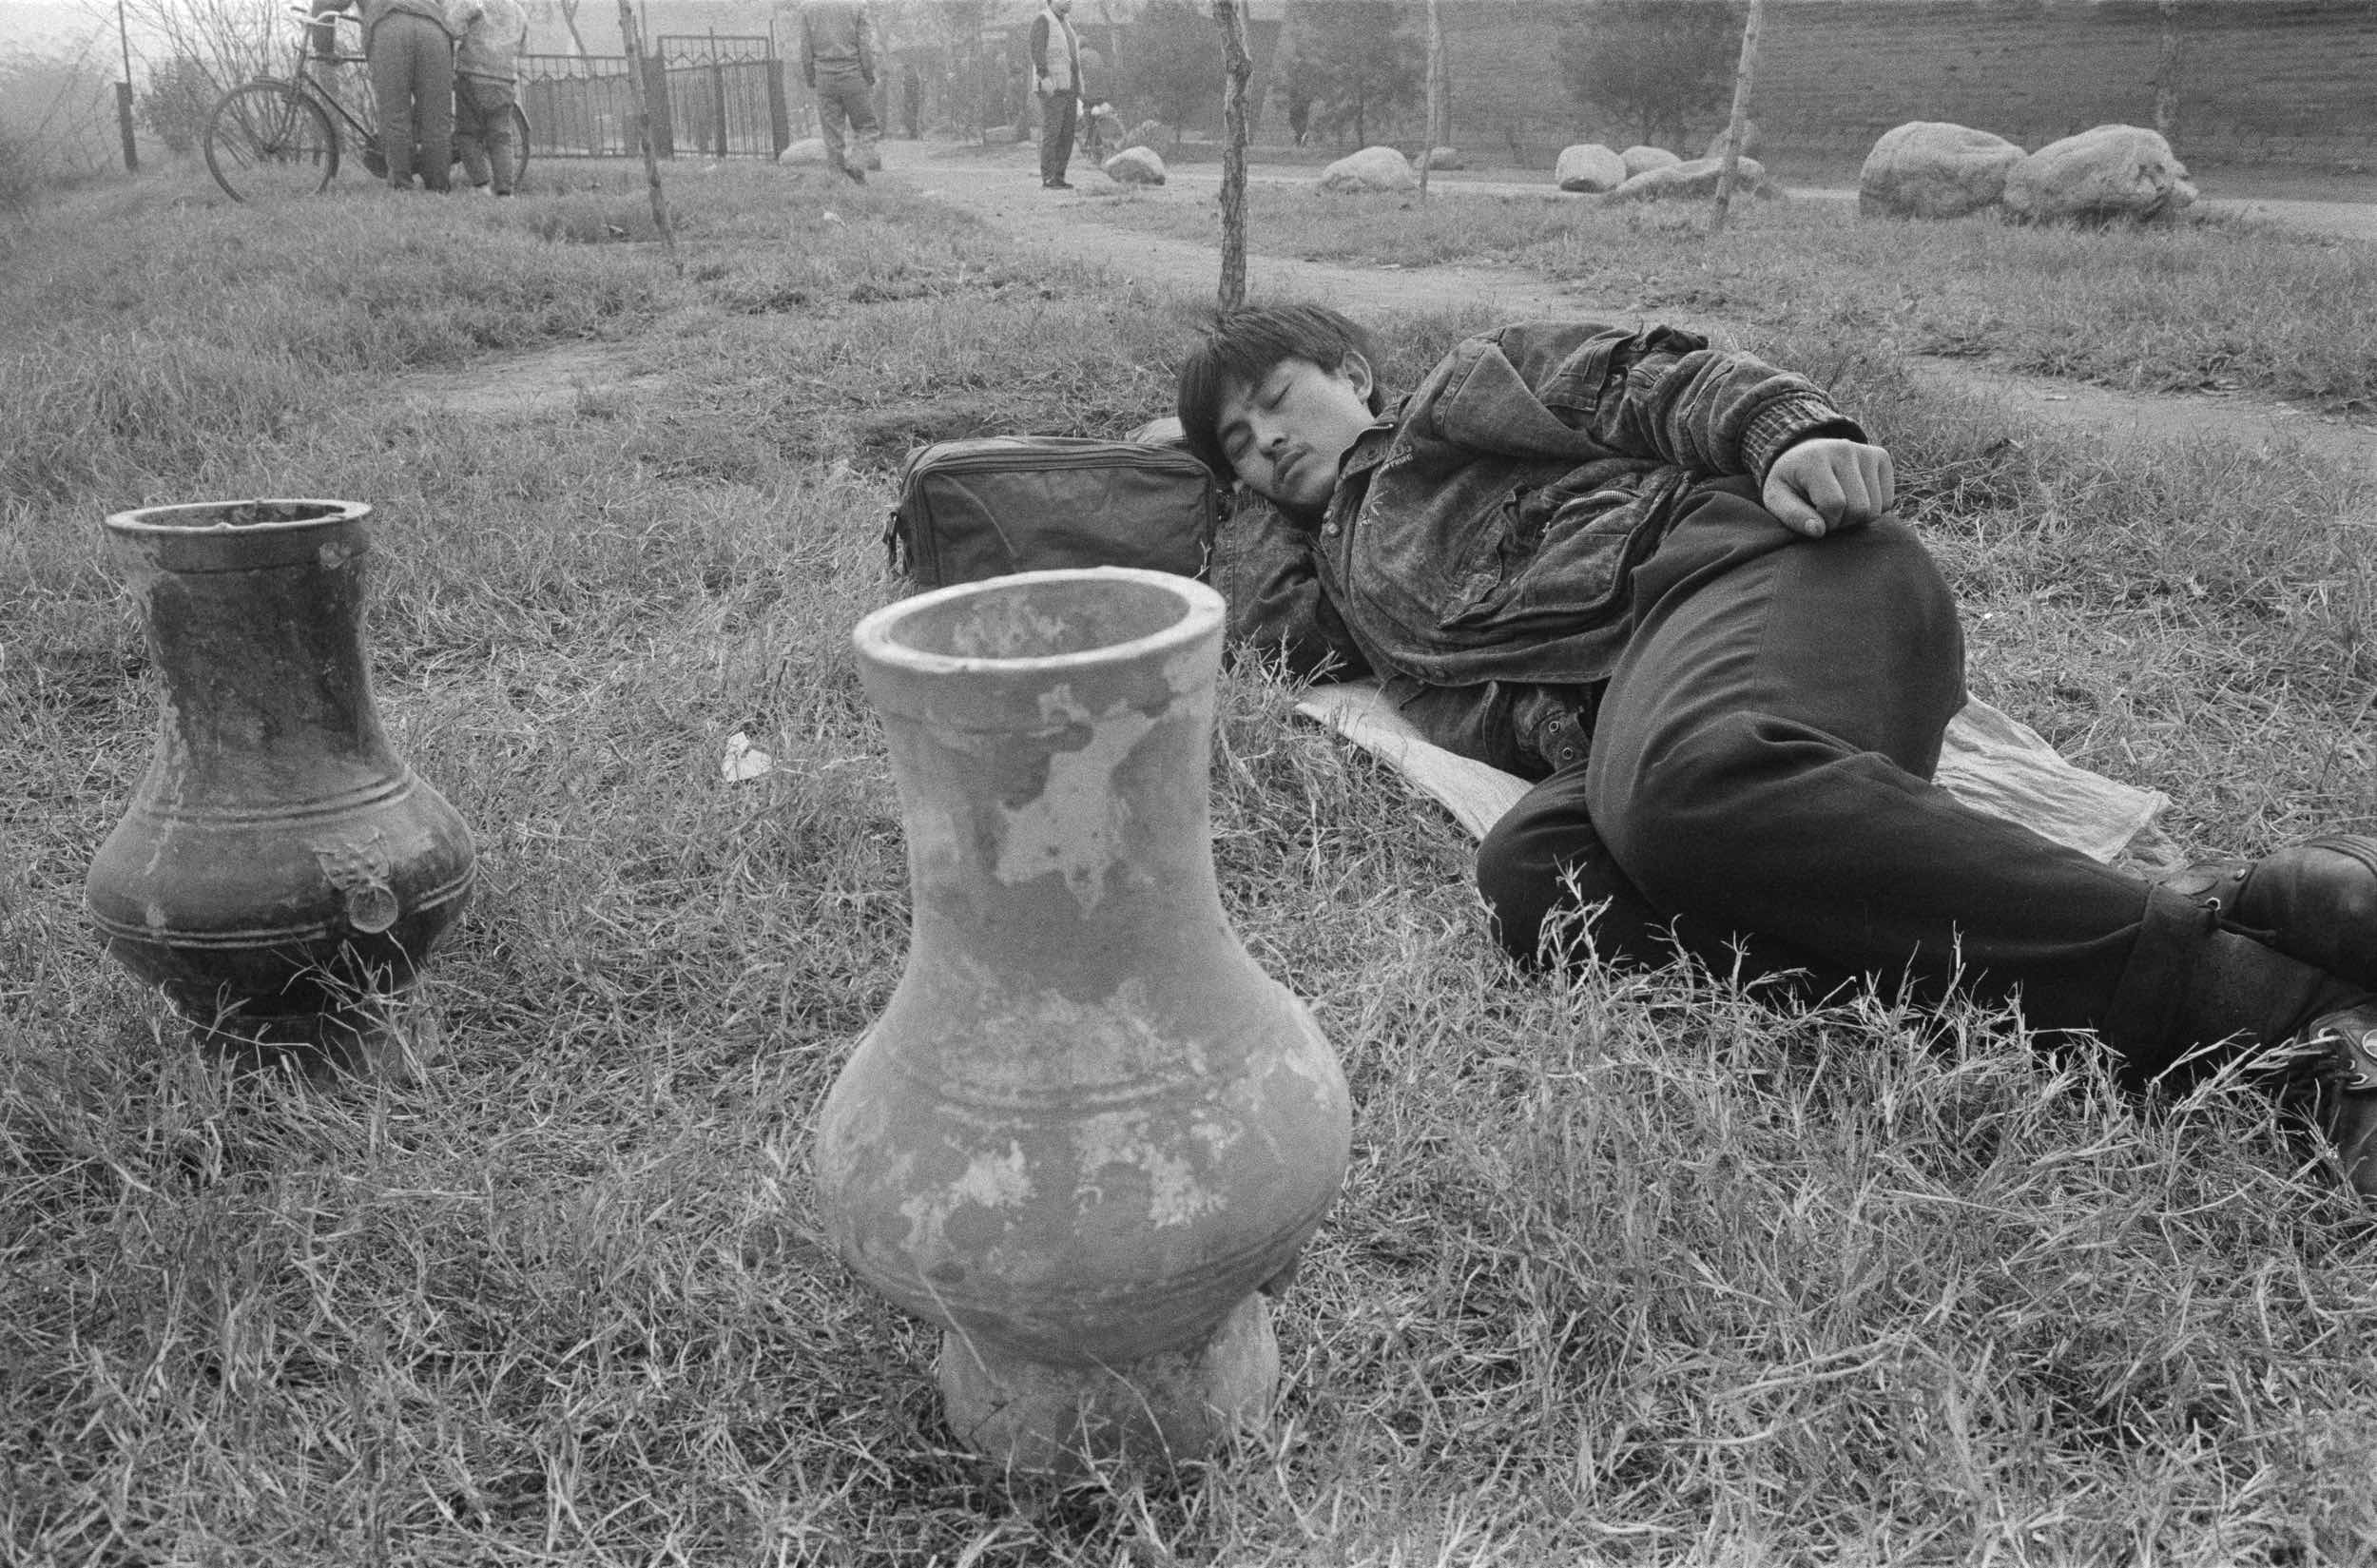 Fotografías de Pekín, 1993-2001. Urna de la dinastía Han en venta fuera de la muralla de la ciudad de Xi’an. 1995 © Ai Weiwei